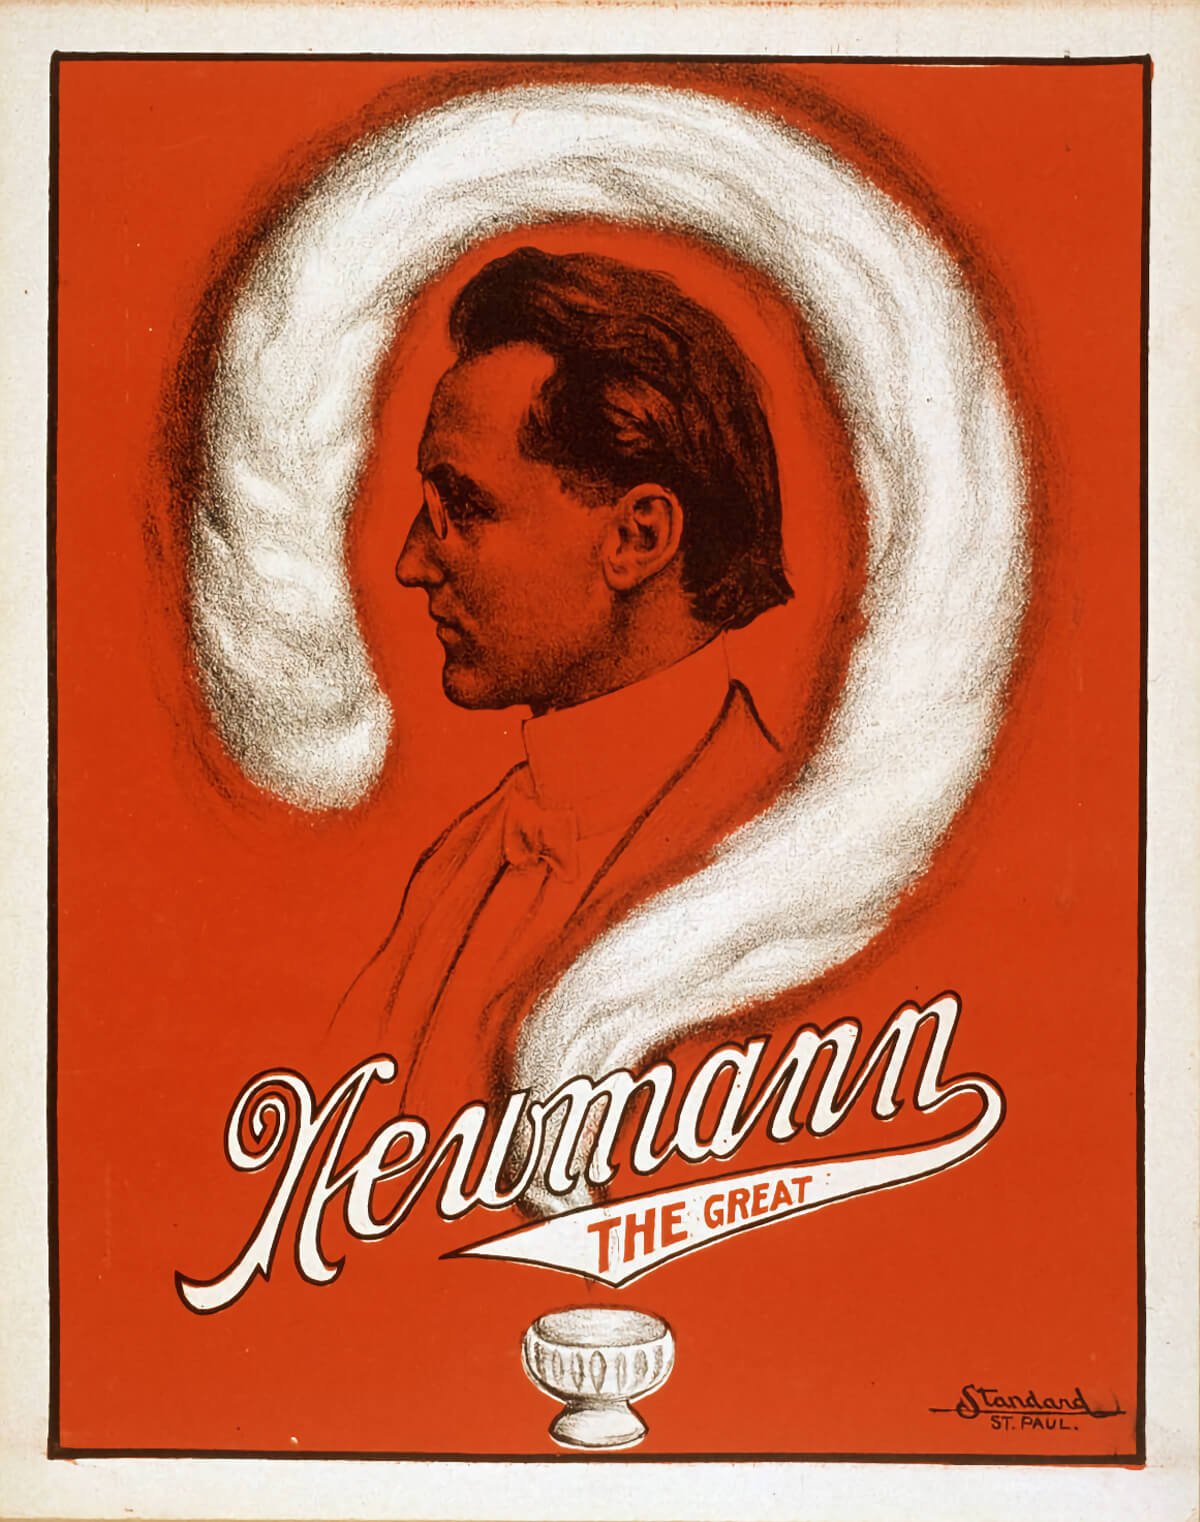 Newmann-the-Great-C-.A.-George-Newmann-Magic-Poster.jpg